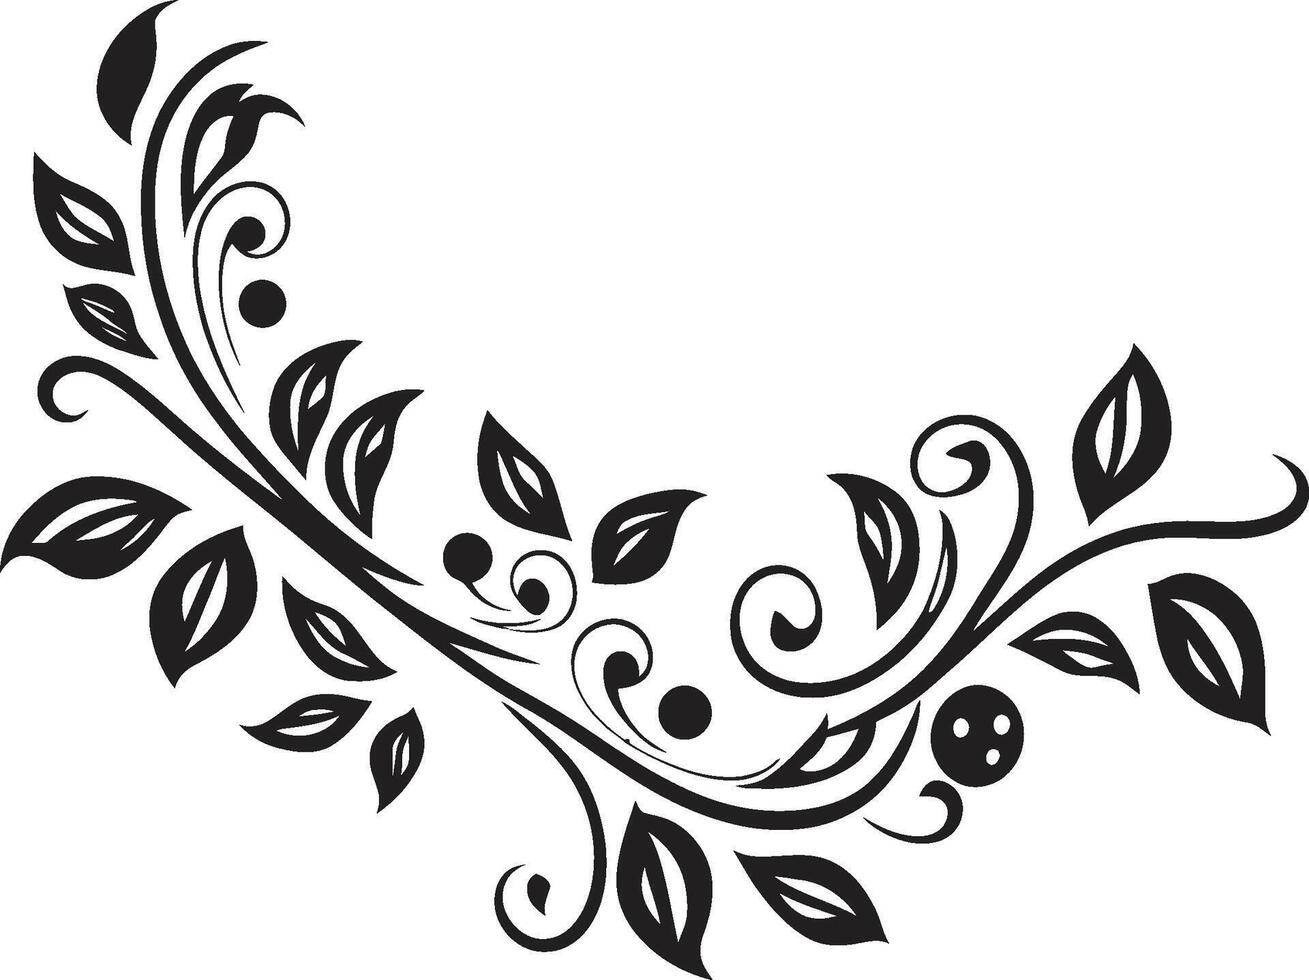 ornato lineamenti elegante nero emblema con scarabocchio decorativo elemento mulinello di fantasia monocromatico logo design con decorativo elemento vettore